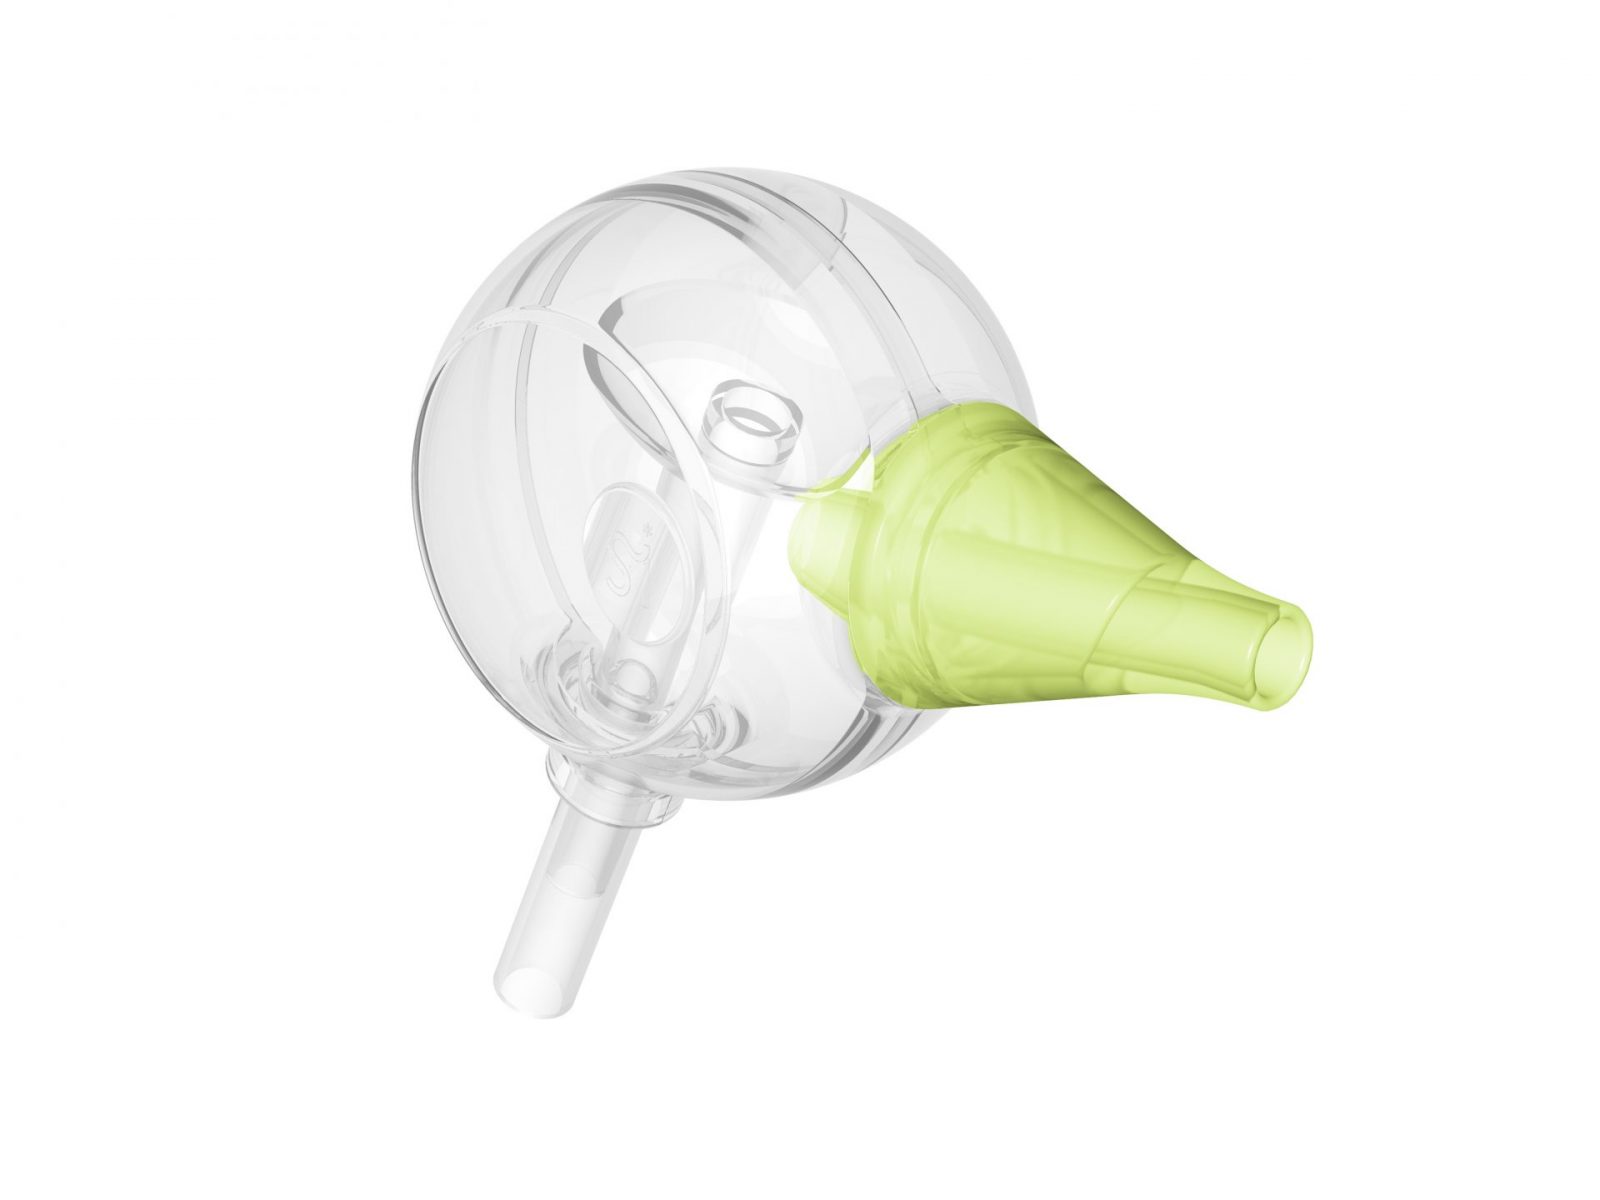 Ein Colibri Saugkopf als Bestandteil der Nosiboo Pro und Nosiboo Eco Nasensauger dient zum filterlosen Auffangen des Nasensekrets